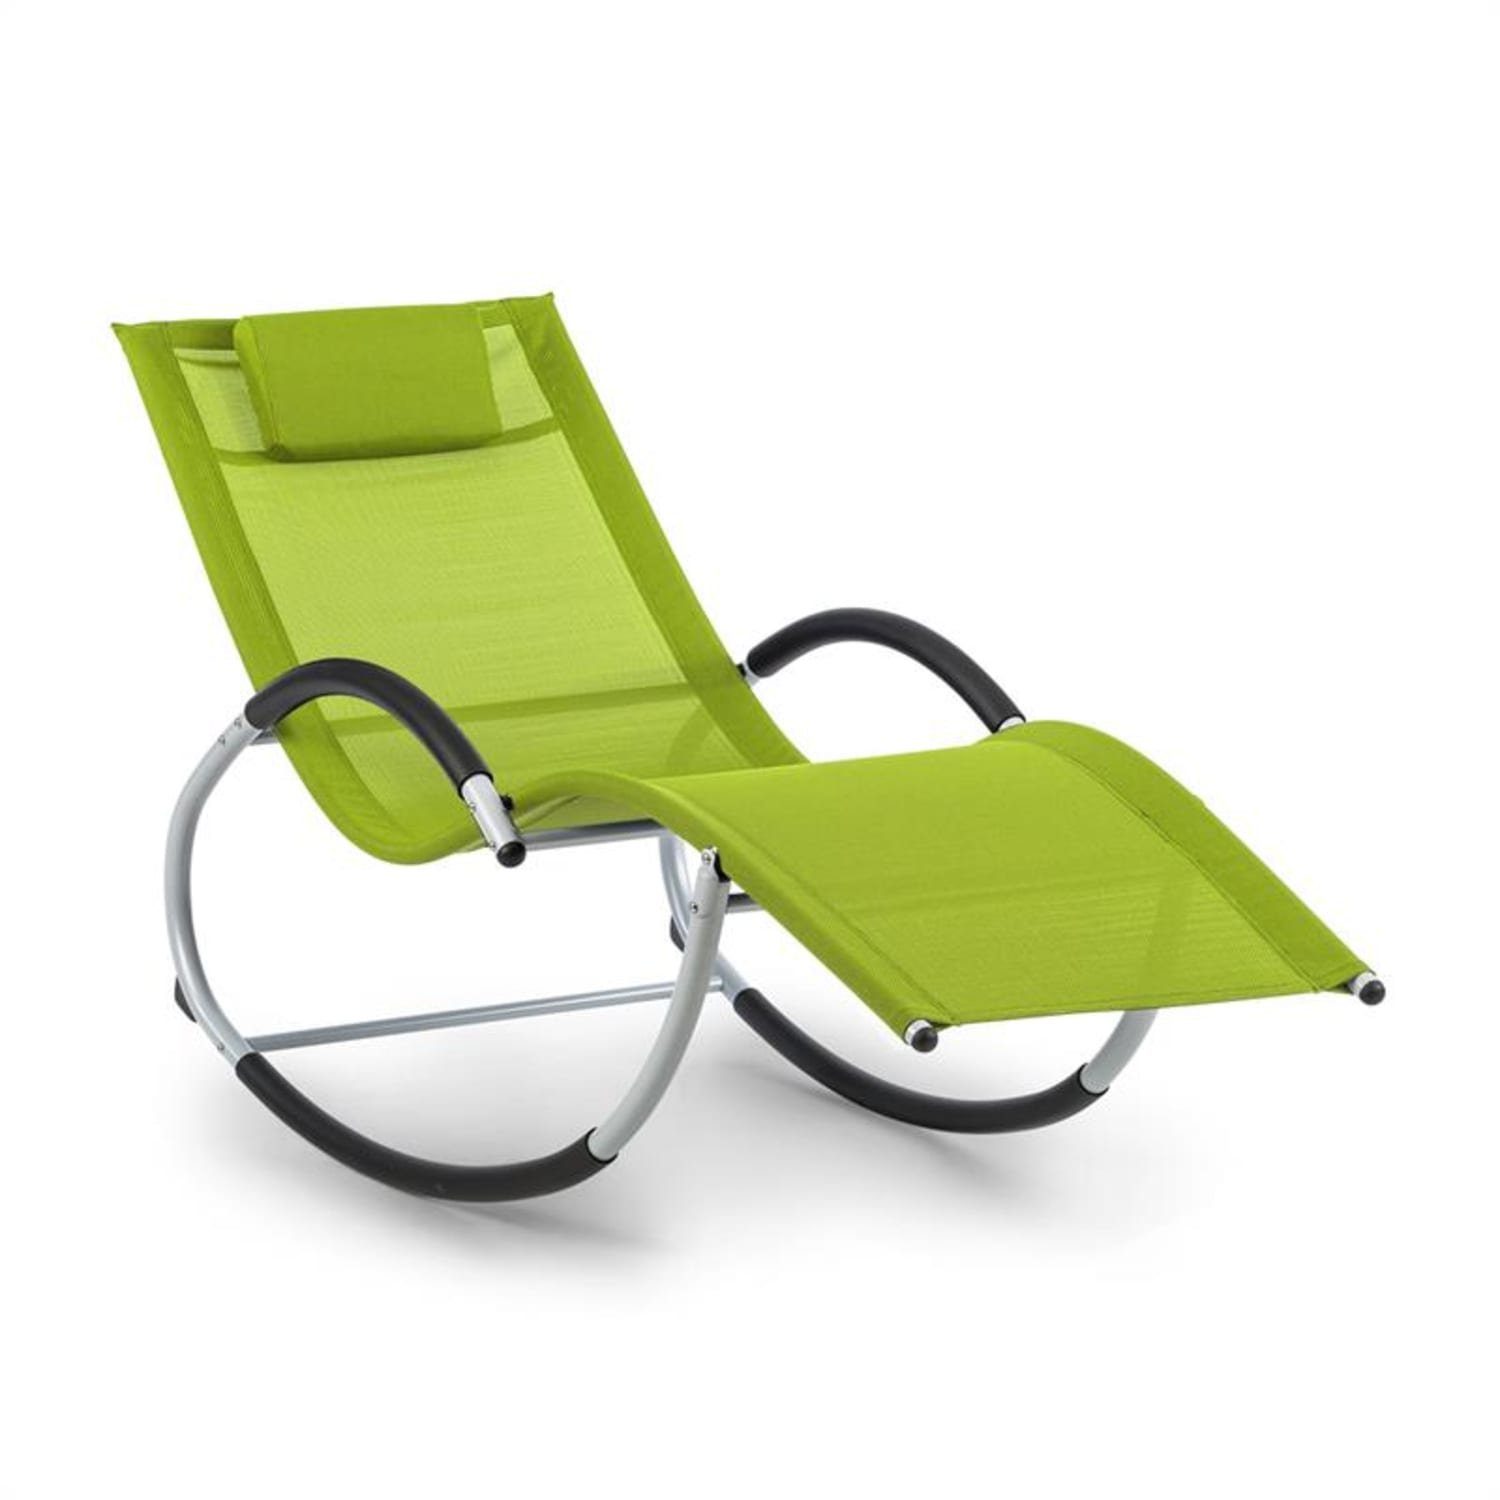 blum Gartenliege Westwood Rocking Chair, Schwingeffekt, ergonomisch geformte Gartenliege